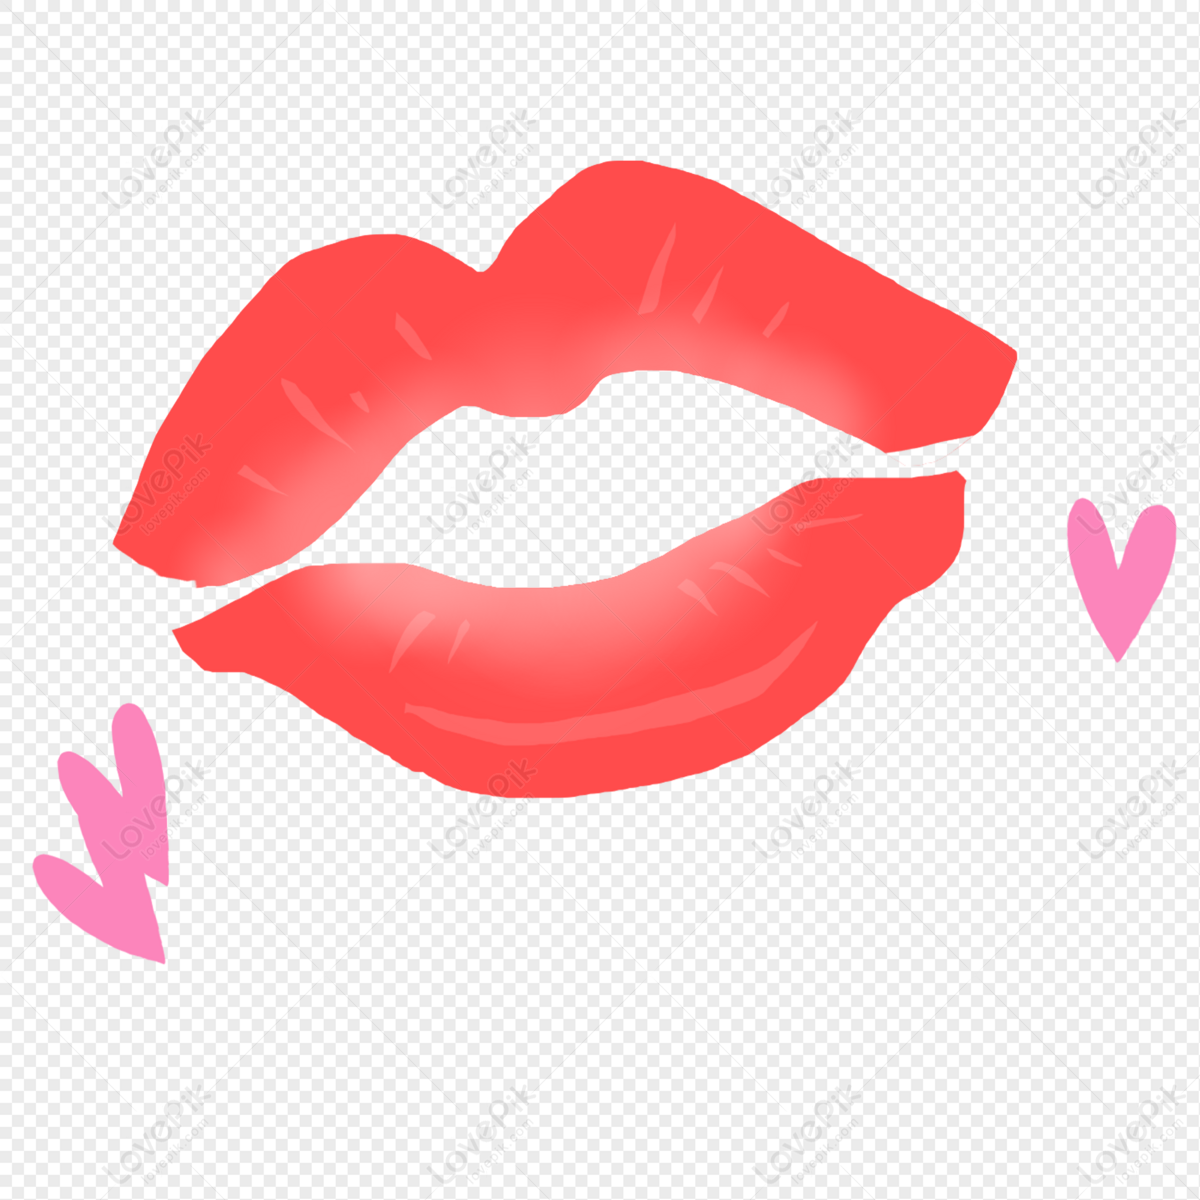 Nụ hôn nóng đỏ là biểu tượng tình yêu tuyệt đẹp, đầy cảm xúc. Hãy cùng xem hình ảnh nụ hôn đầy tình yêu để cảm nhận được sự ấm áp và lãng mạn của nó. Mỗi nụ hôn đều có một câu chuyện riêng, và hình ảnh này chắc chắn sẽ làm xúc động trái tim của bạn!